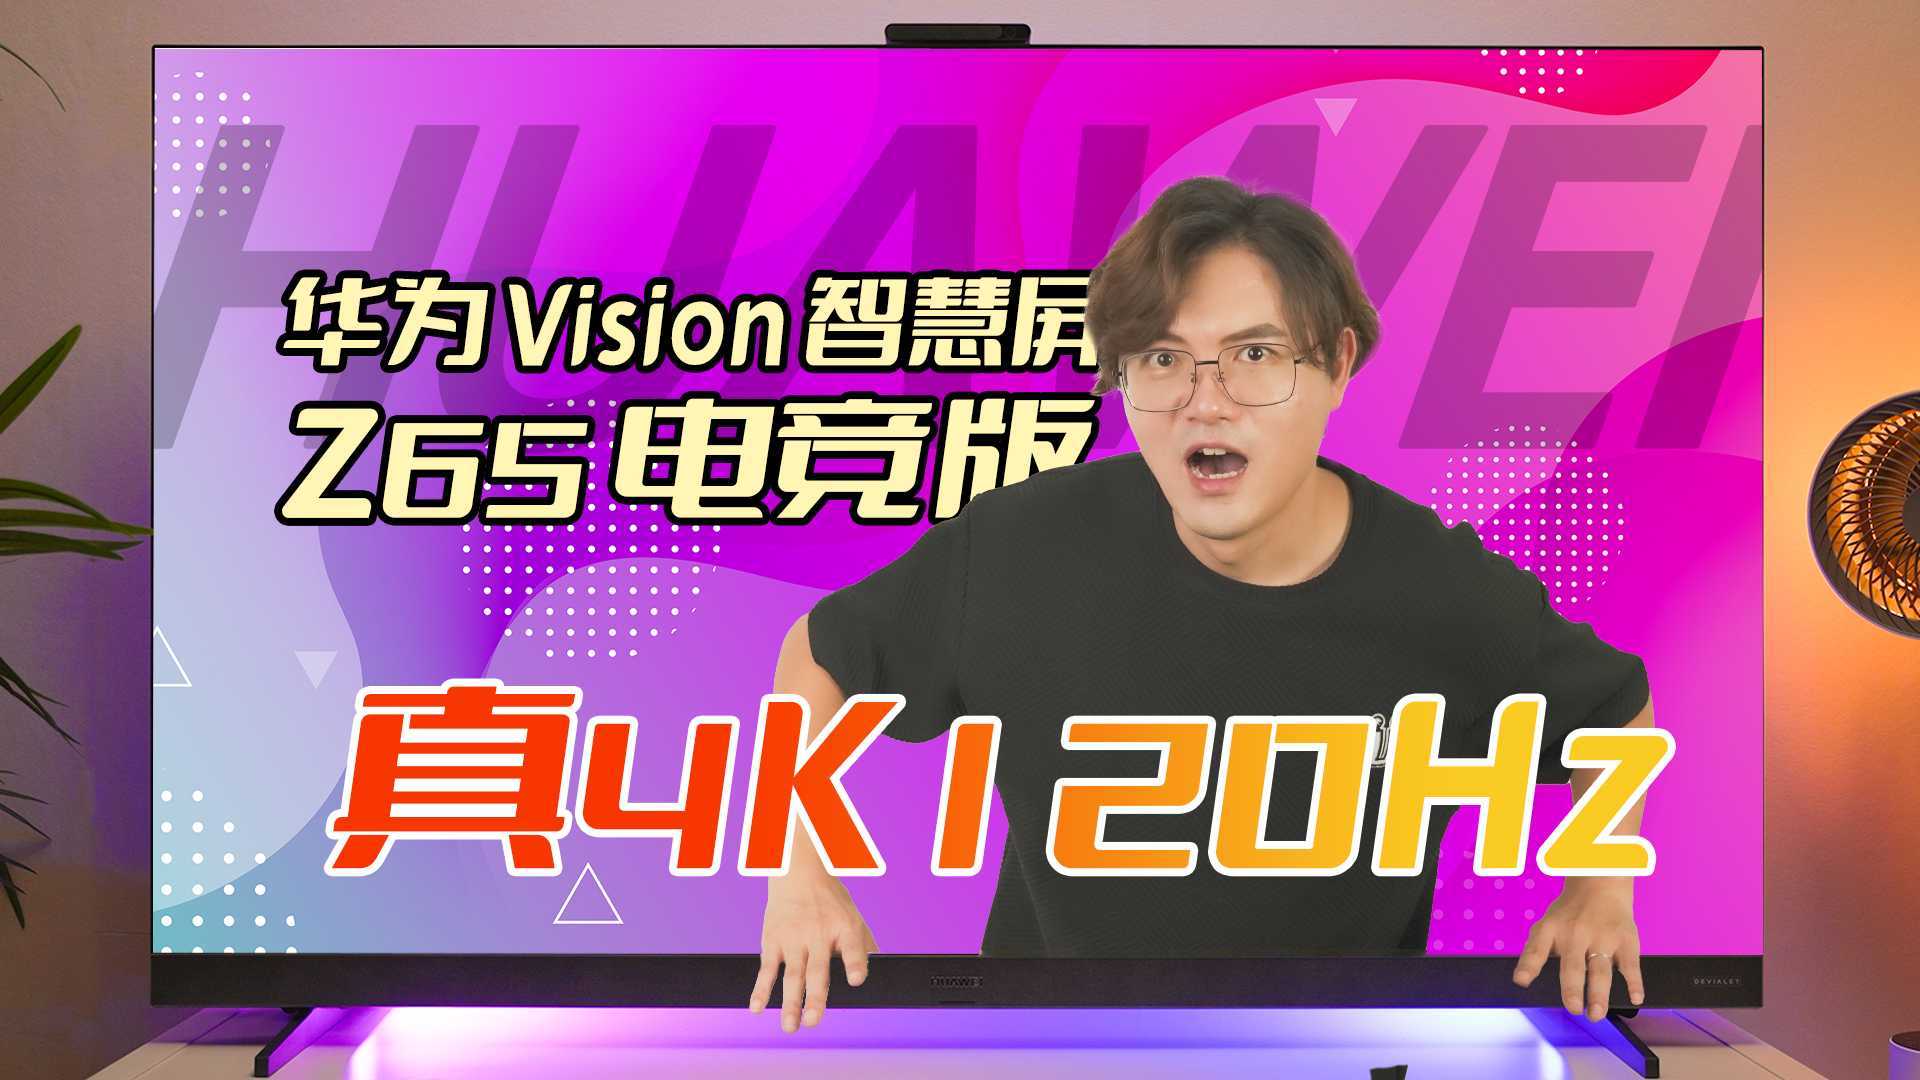 大屏4K120Hz玩游戏有多爽？华为Vision智慧屏 Z65 电竞版给你答案